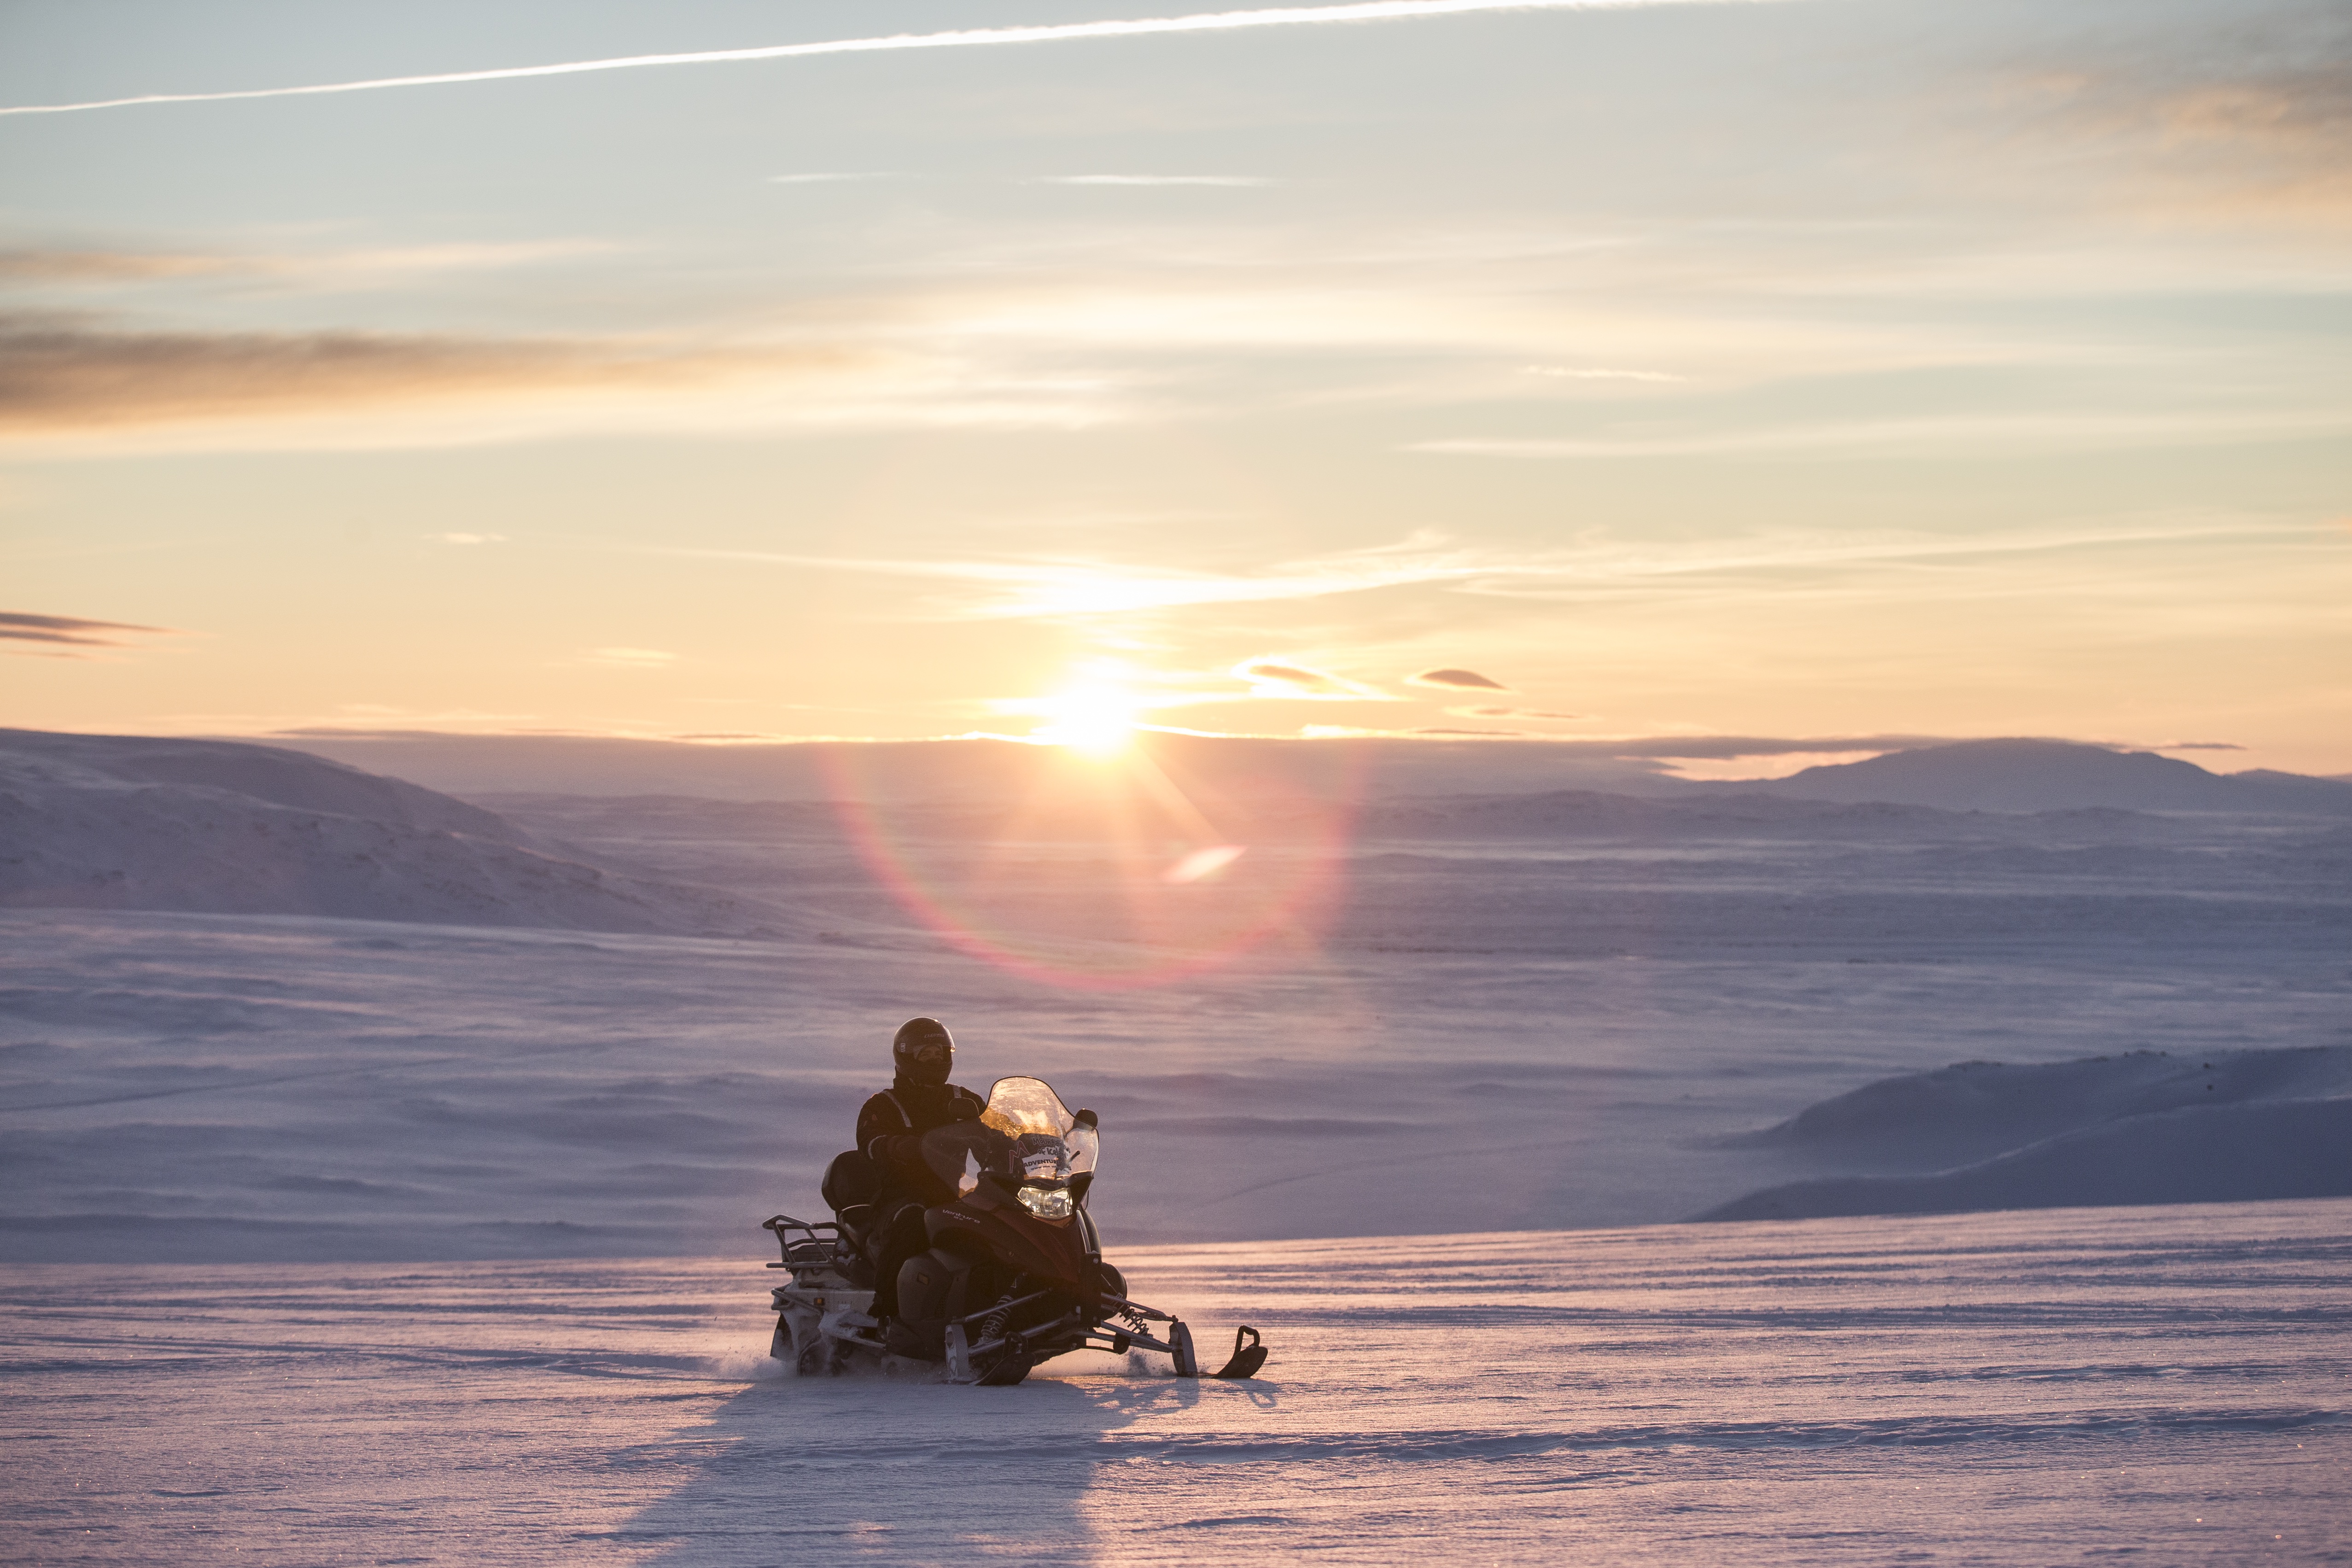 Súbete a una moto de nieve y comienza tu viaje a través del glaciar.